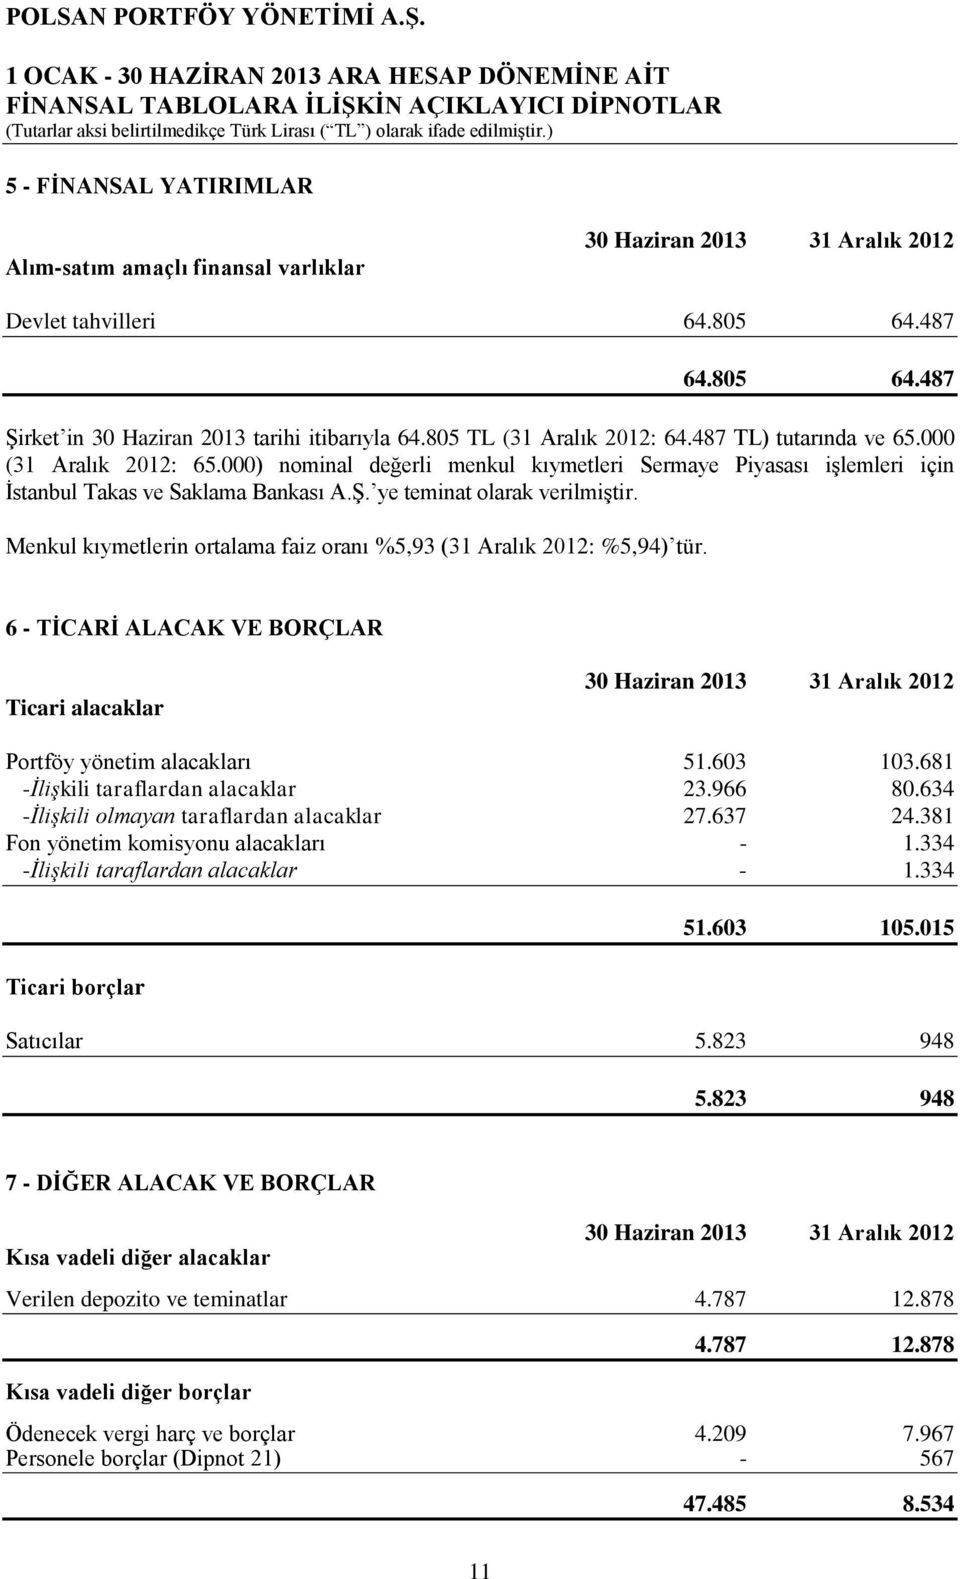 Menkul kıymetlerin ortalama faiz oranı %5,93 (31 Aralık 2012: %5,94) tür. 6 - TİCARİ ALACAK VE BORÇLAR Ticari alacaklar Portföy yönetim alacakları 51.603 103.681 -İlişkili taraflardan alacaklar 23.